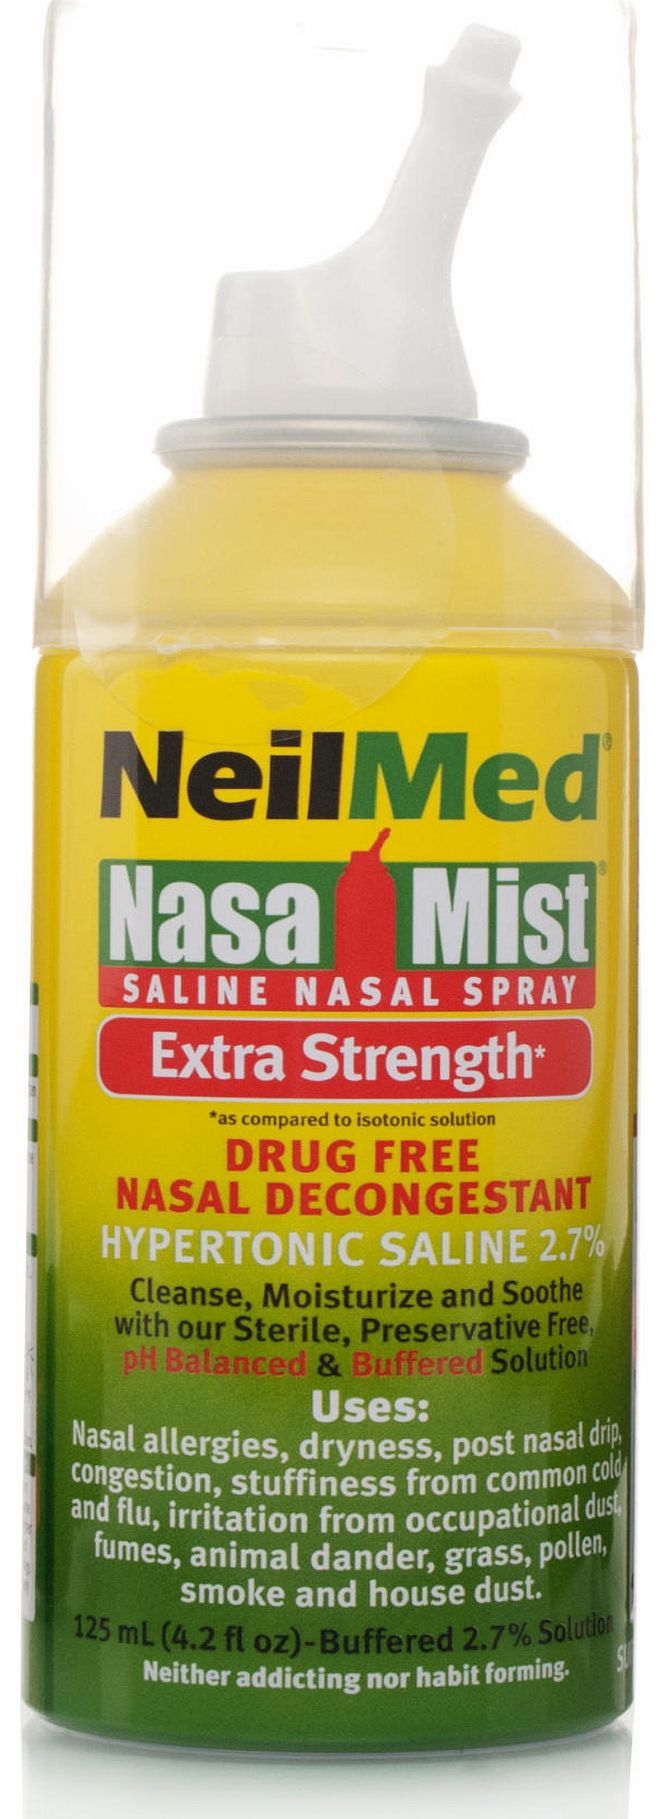 NeilMed NasaMist Saline Hypertonic Spray Extra